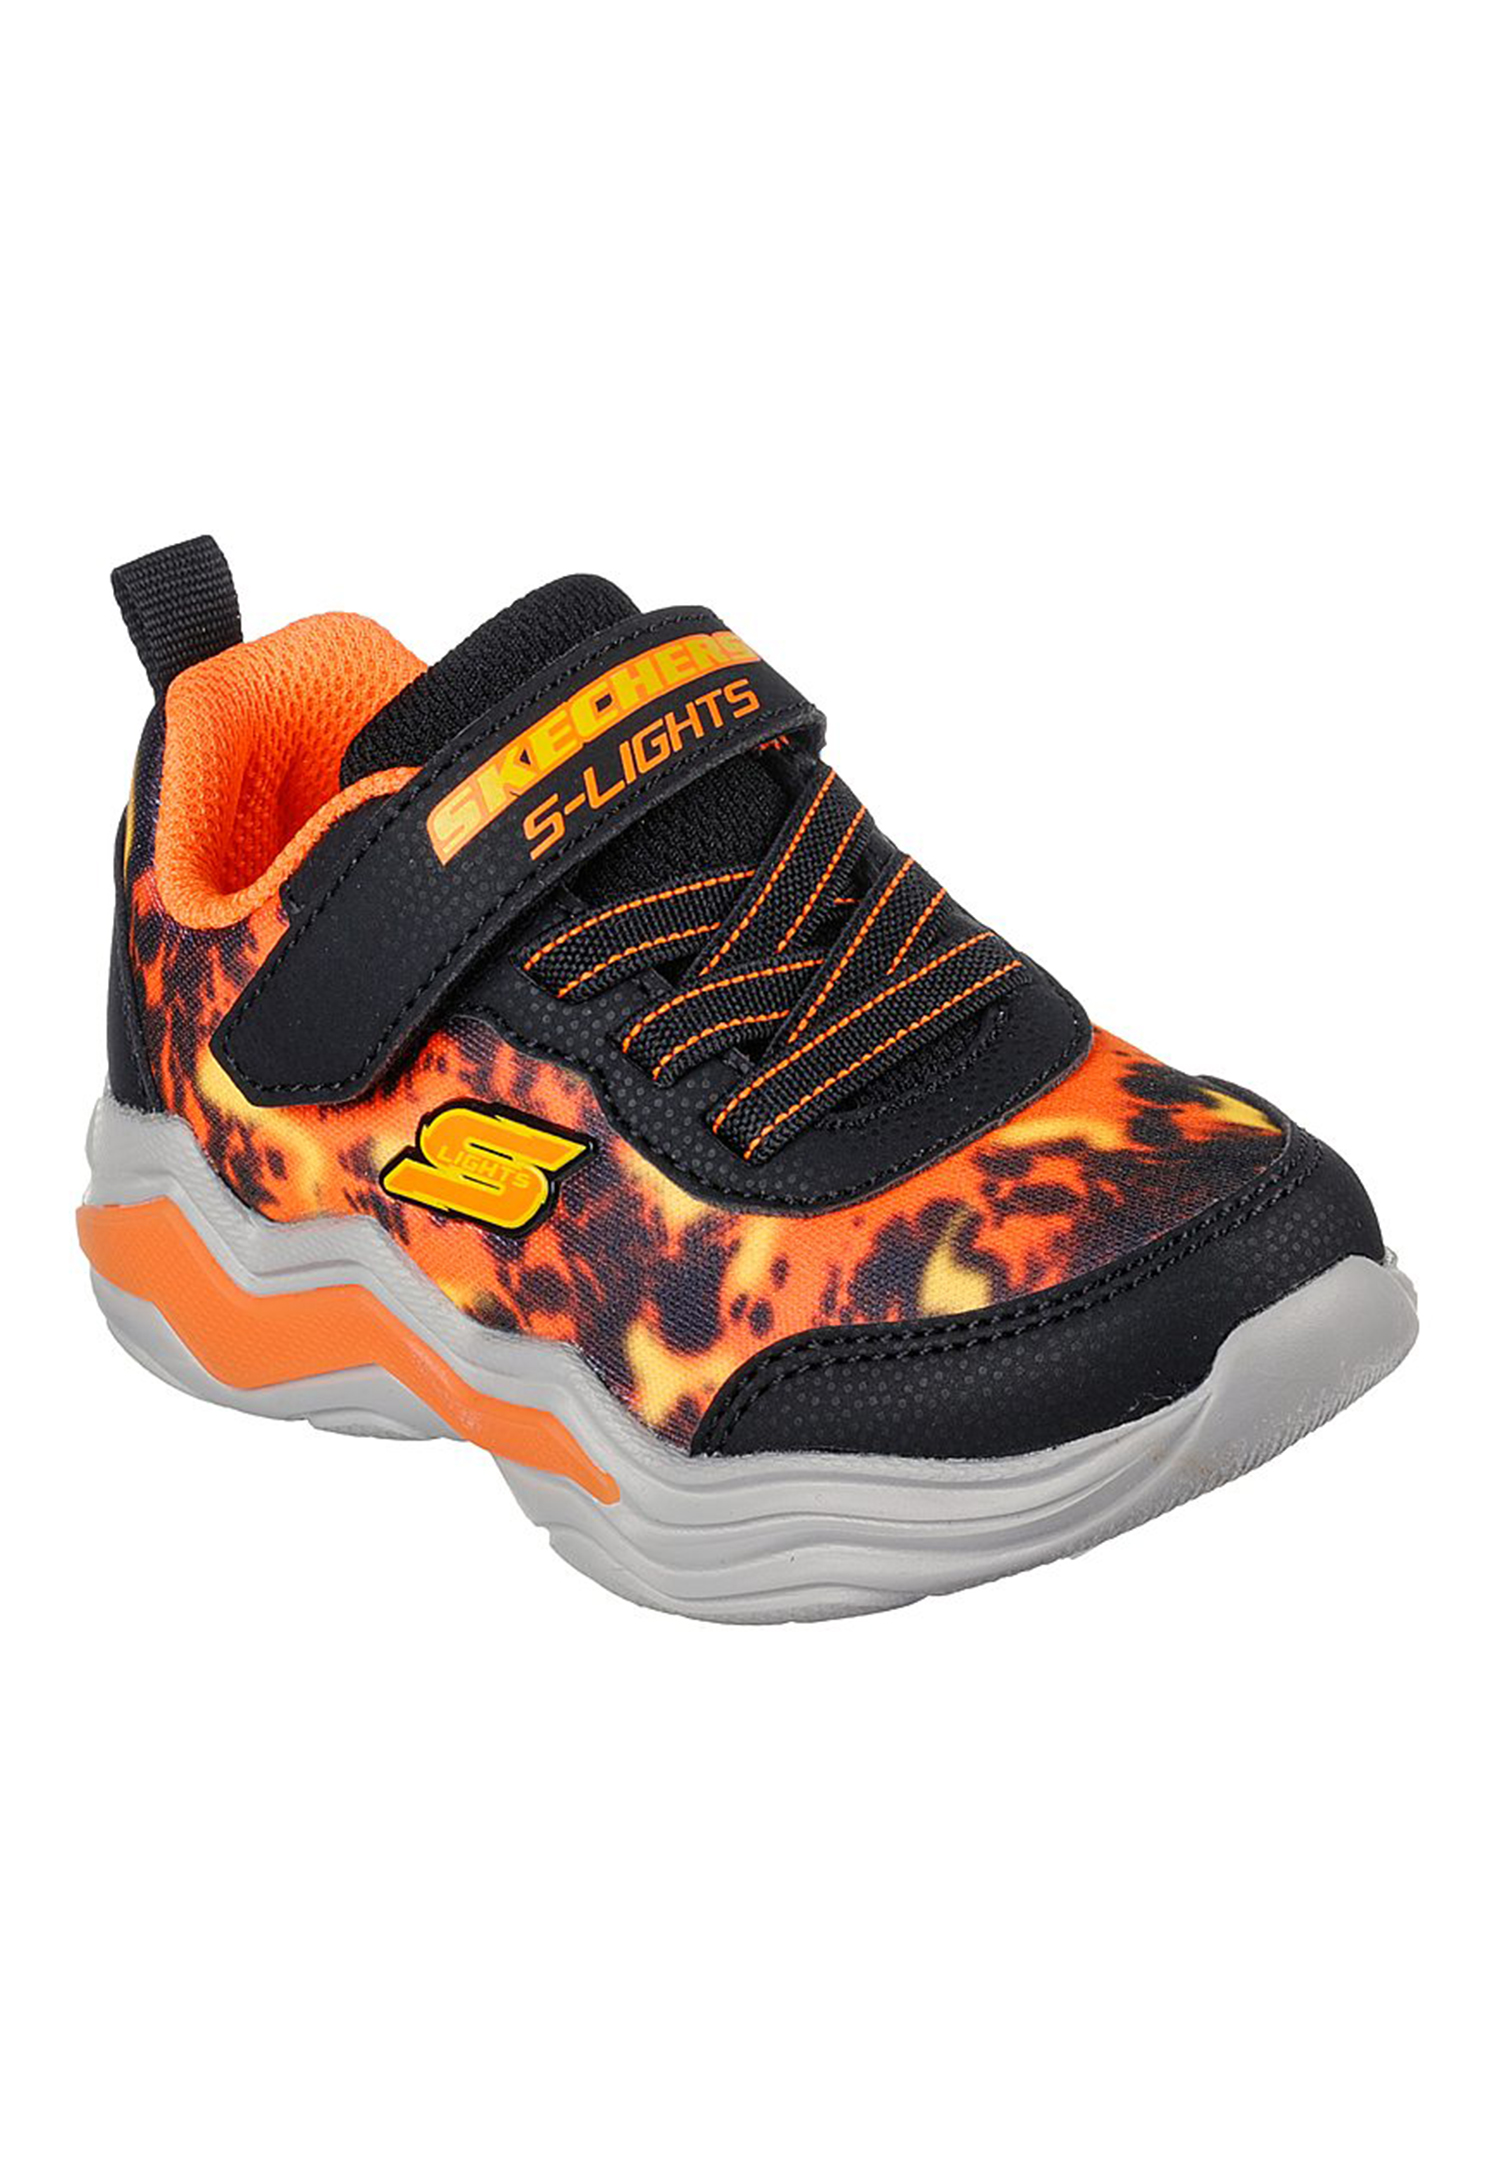 Skechers S Lights - Erupters IV - ROLDEN Kinder Sneaker Unisex Schuhe LED 400124N orange